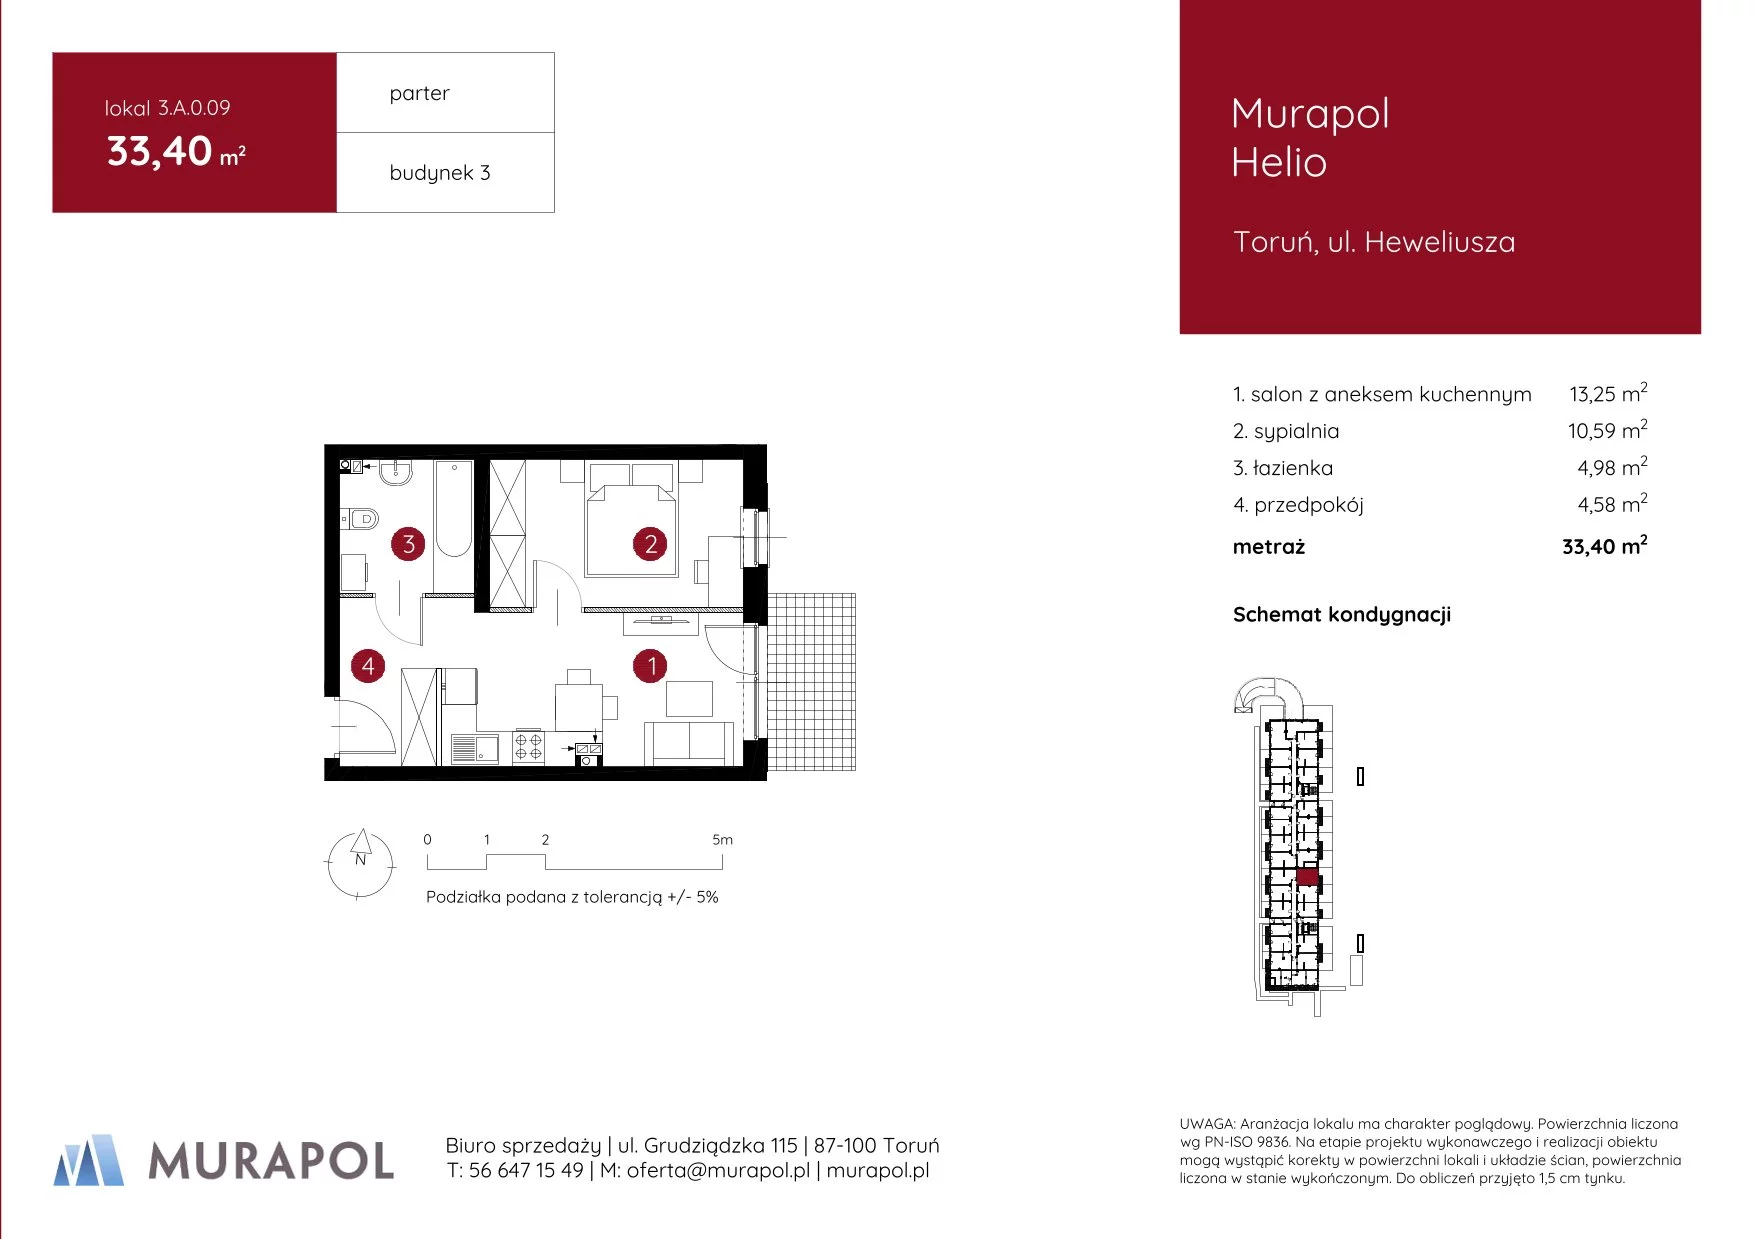 Mieszkanie 33,40 m², parter, oferta nr 3.A.0.09, Murapol Helio, Toruń, Wrzosy, JAR, ul. Heweliusza